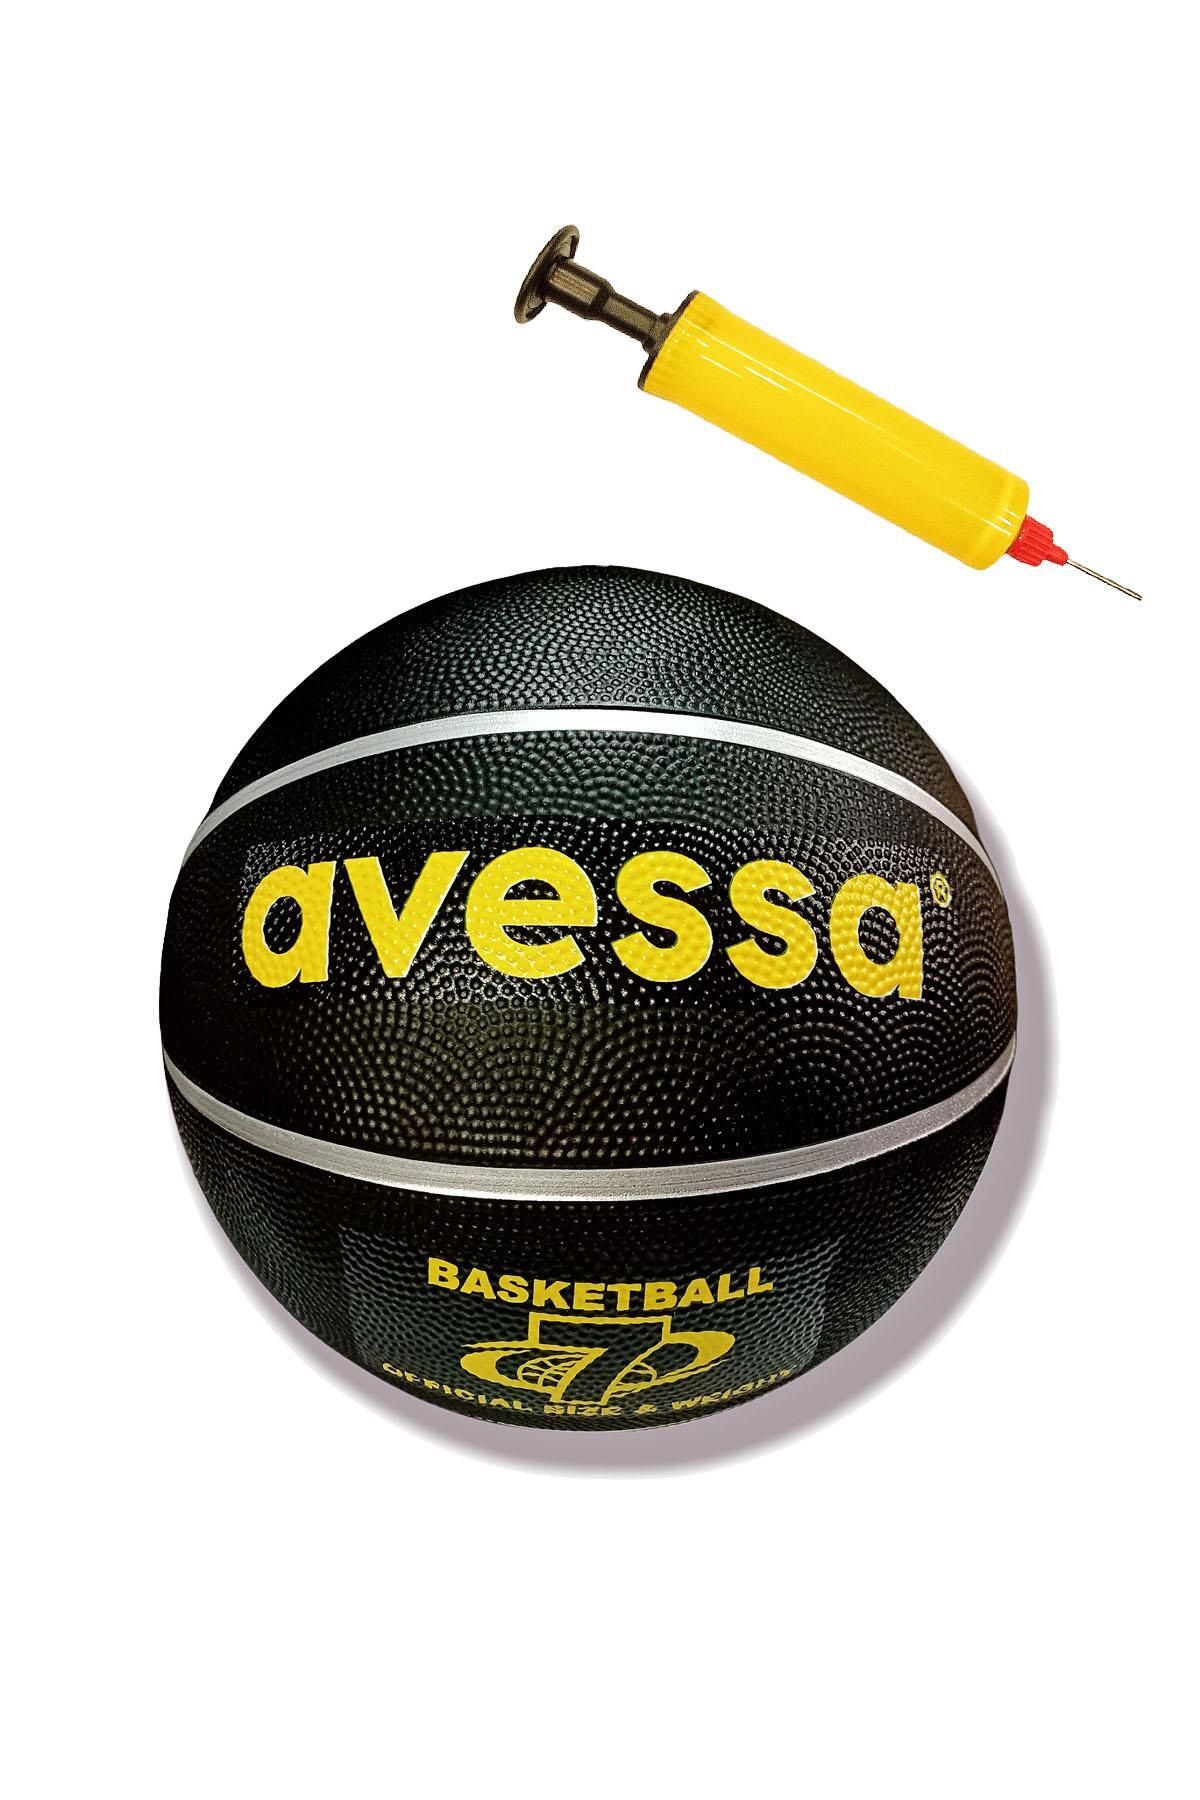 Avessa Brc-7sı Basketbol Topu No7 Pompalı